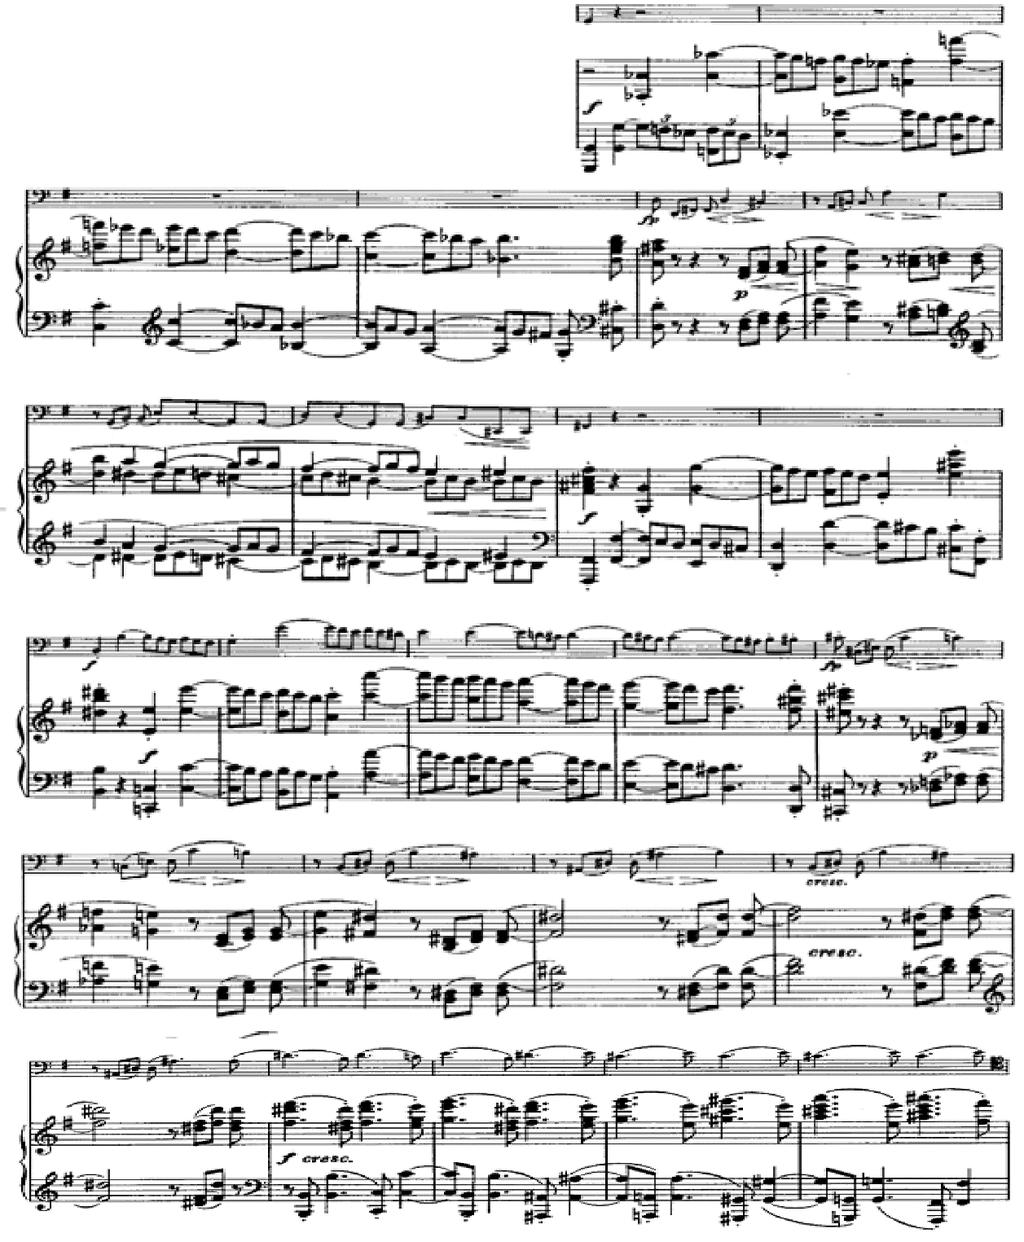 74 Johannes Brahms ın Opus 38 Mi Minör Viyolonsel-Piyano Sonatının Üçüncü Bölümünün İncelenmesi piyanonun sol elindeki oktavlar viyolonsel partisine